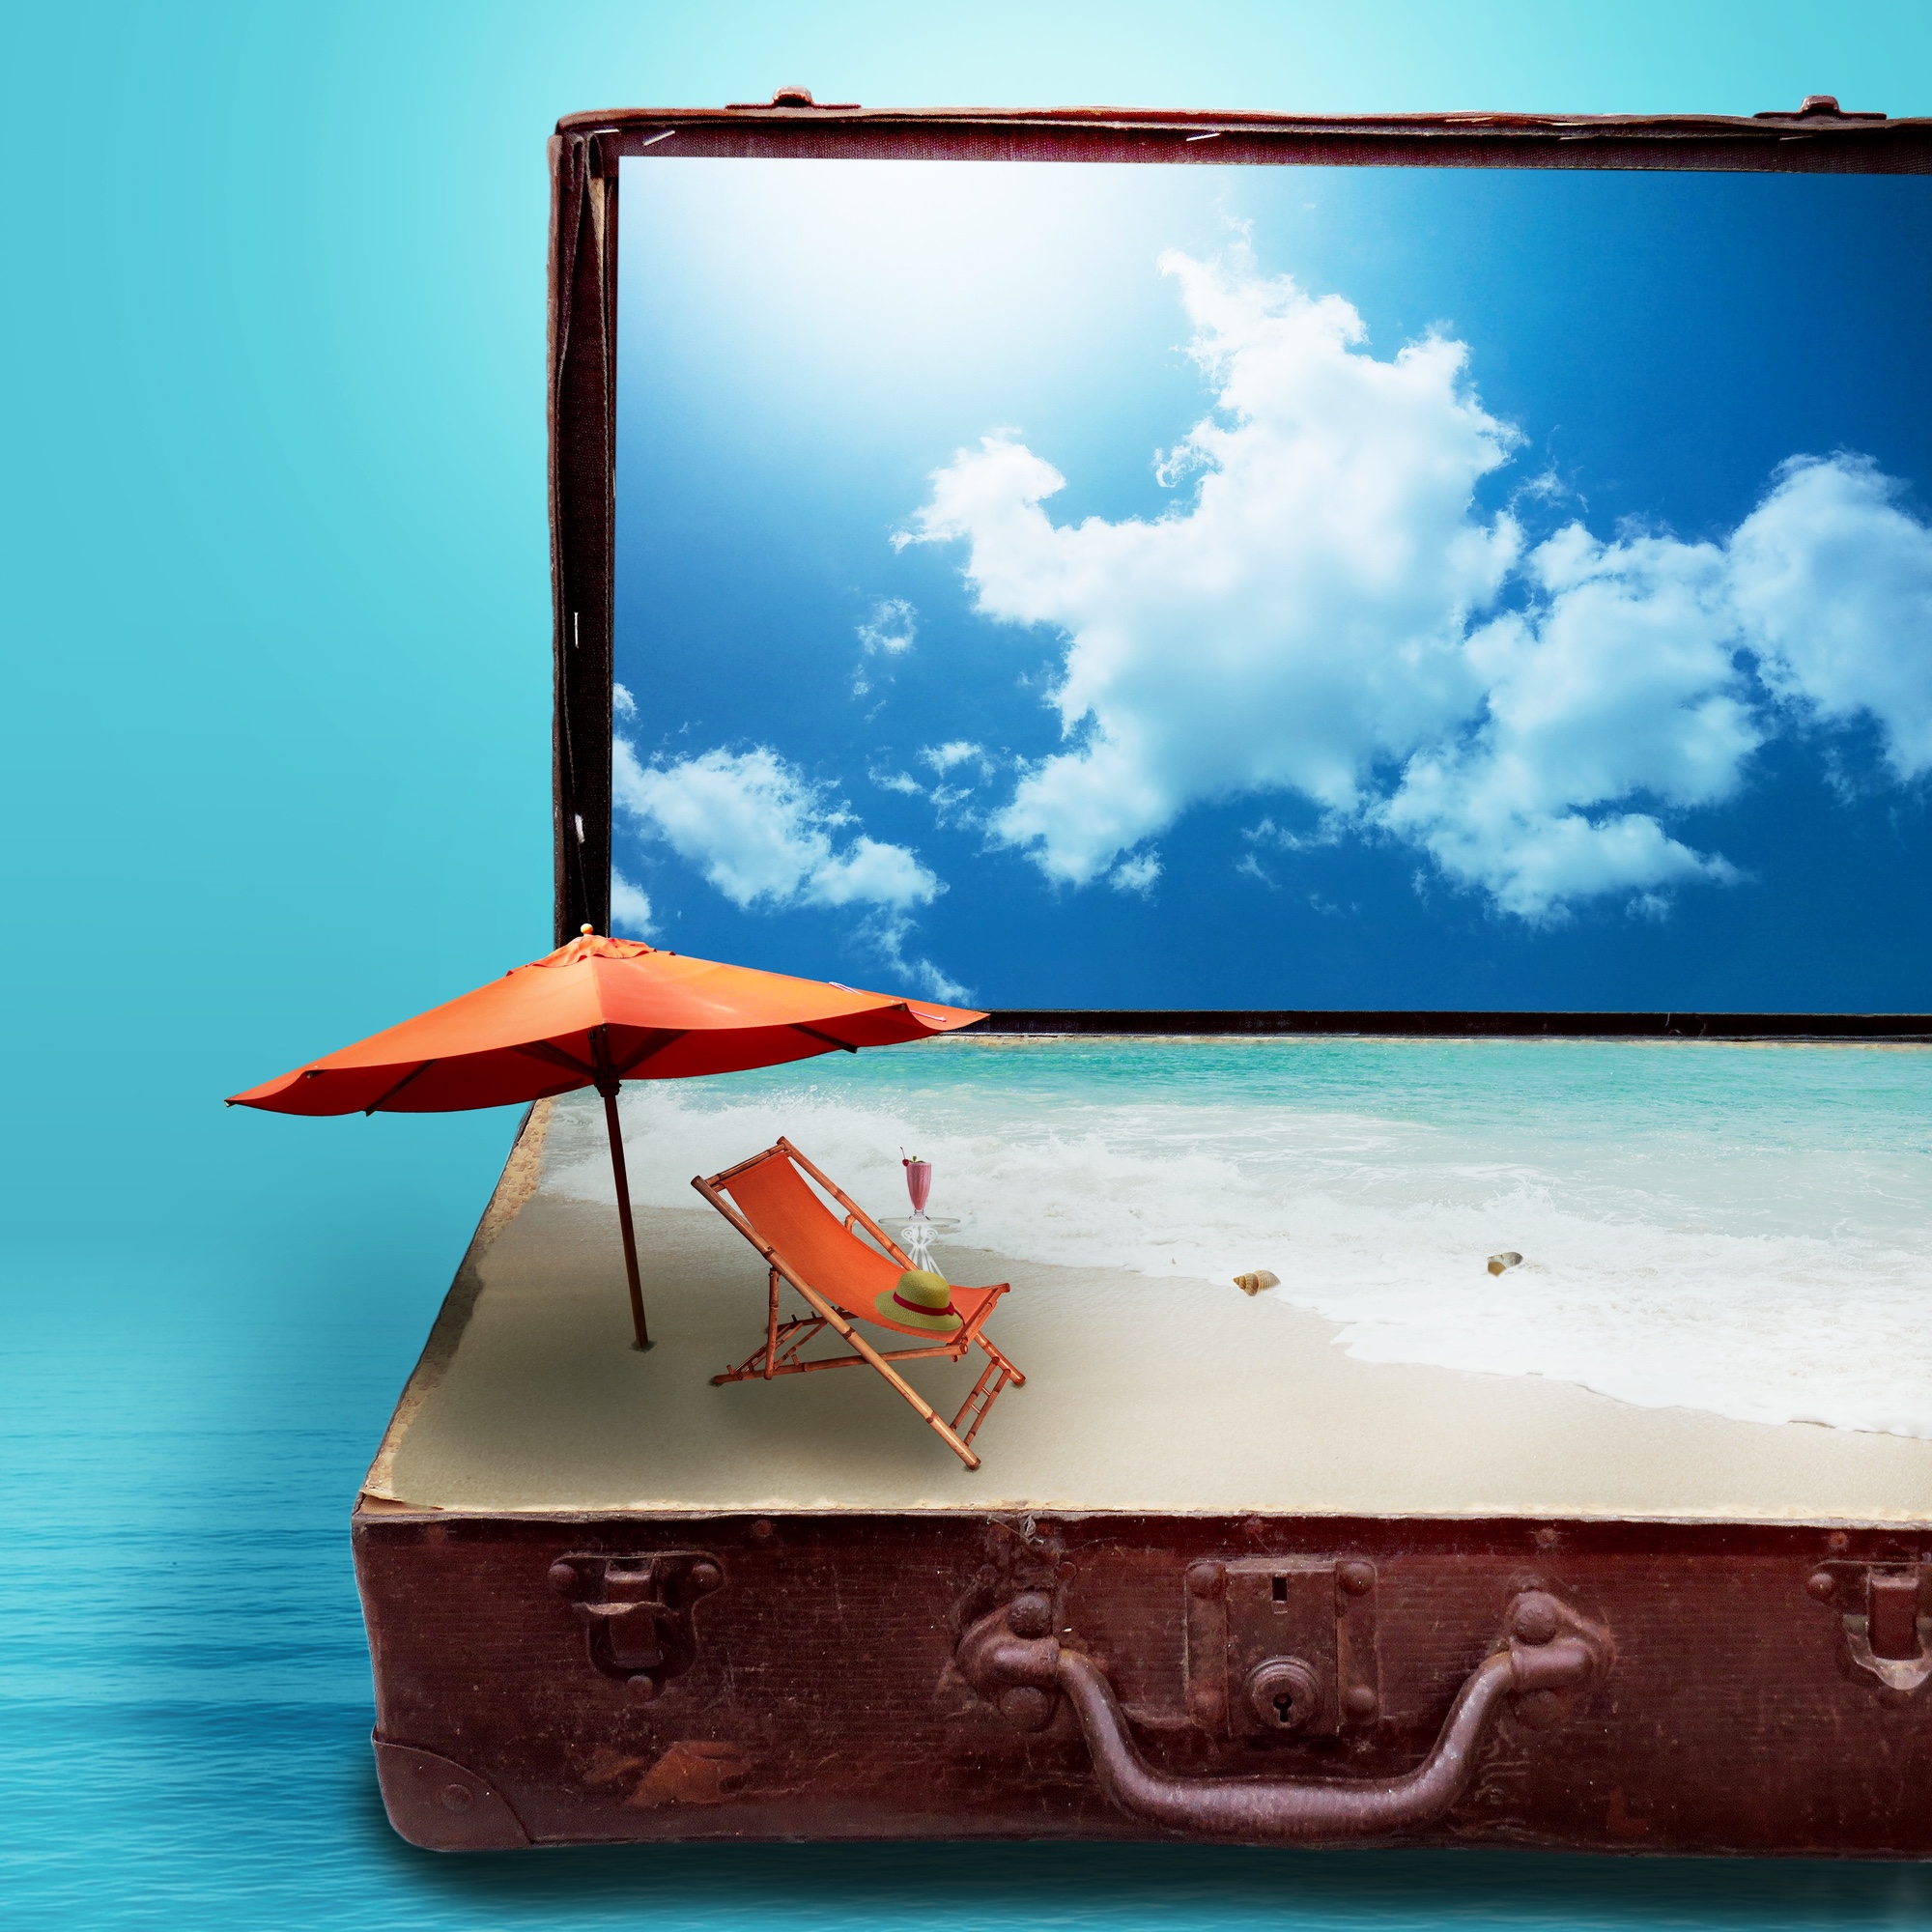 Bild: Koffer mit Strand-Urlaub-Fantasie